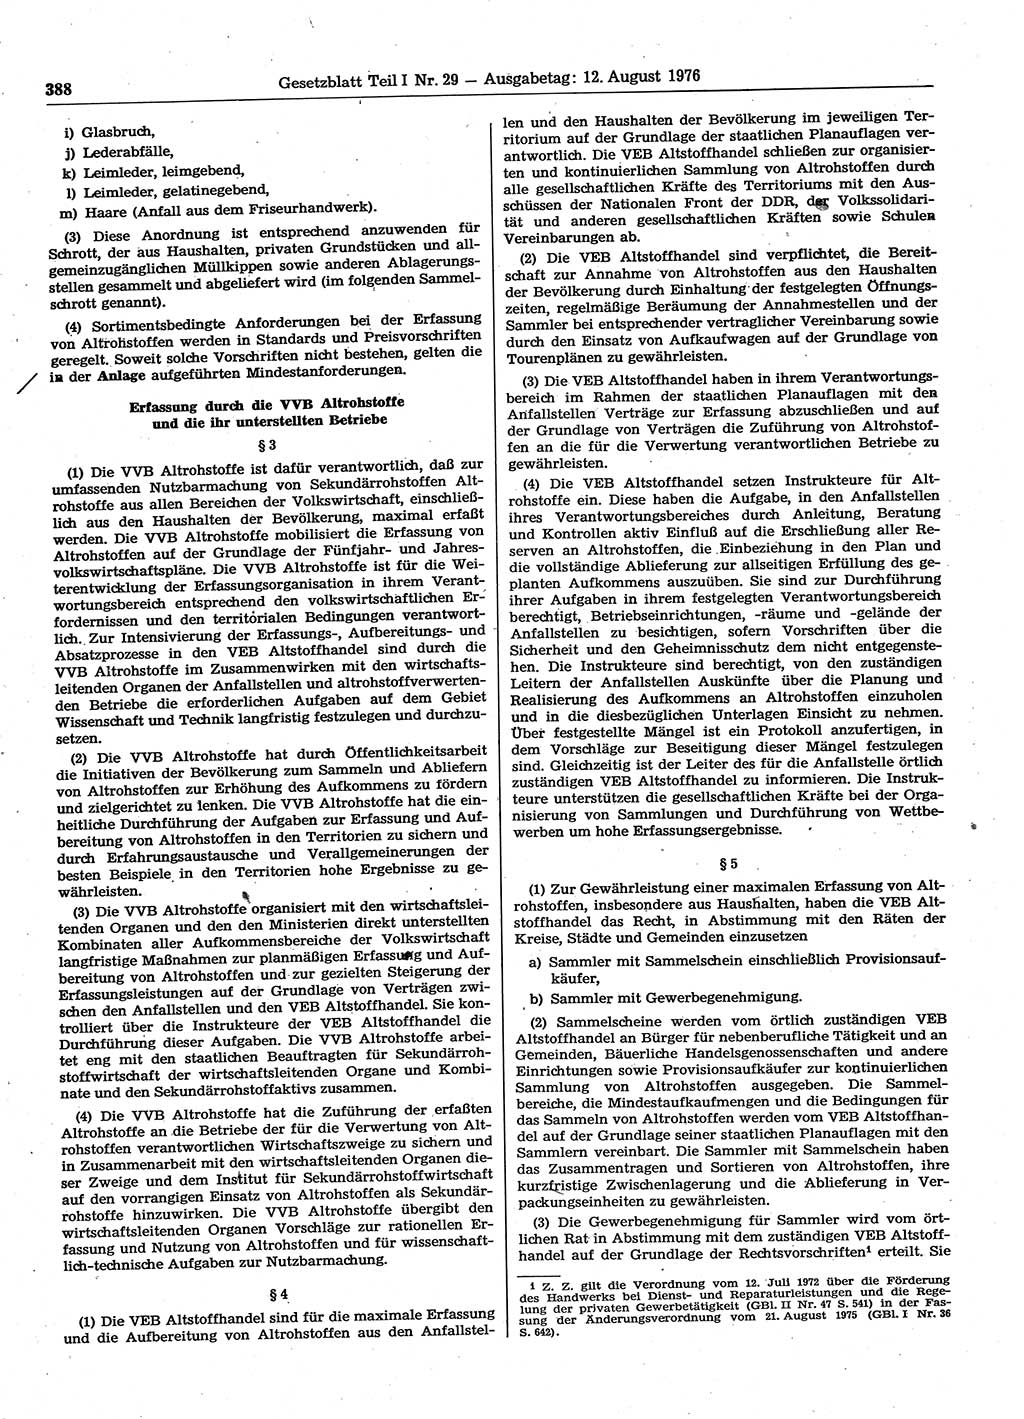 Gesetzblatt (GBl.) der Deutschen Demokratischen Republik (DDR) Teil Ⅰ 1976, Seite 388 (GBl. DDR Ⅰ 1976, S. 388)